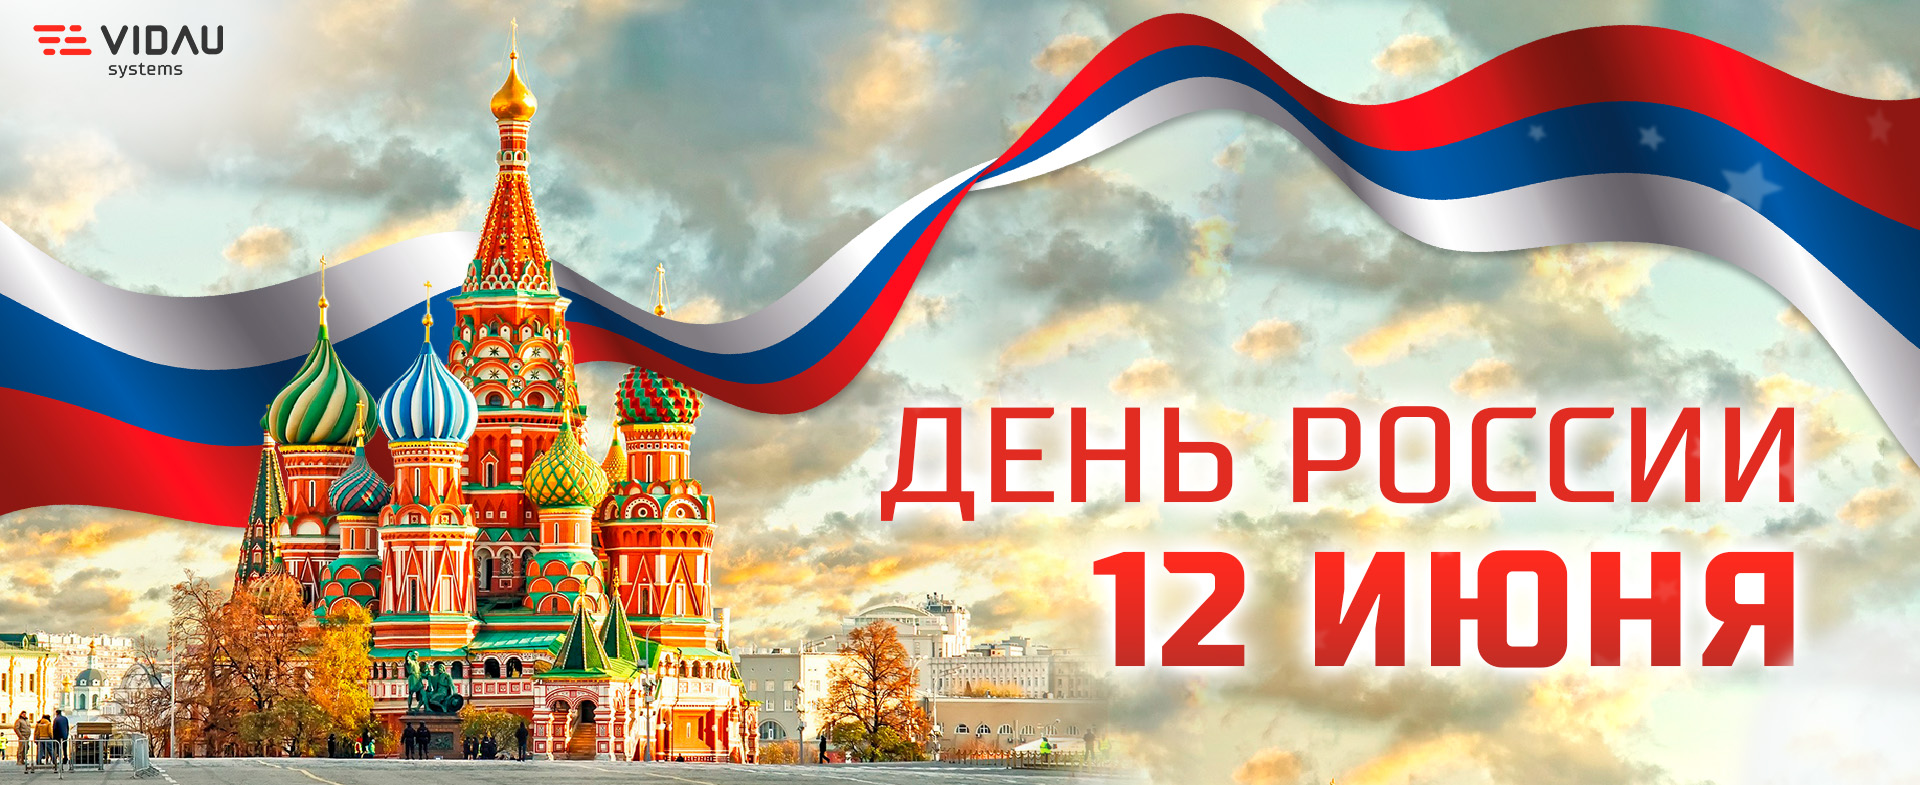 VIDAU Systems поздравляет с Днём России!